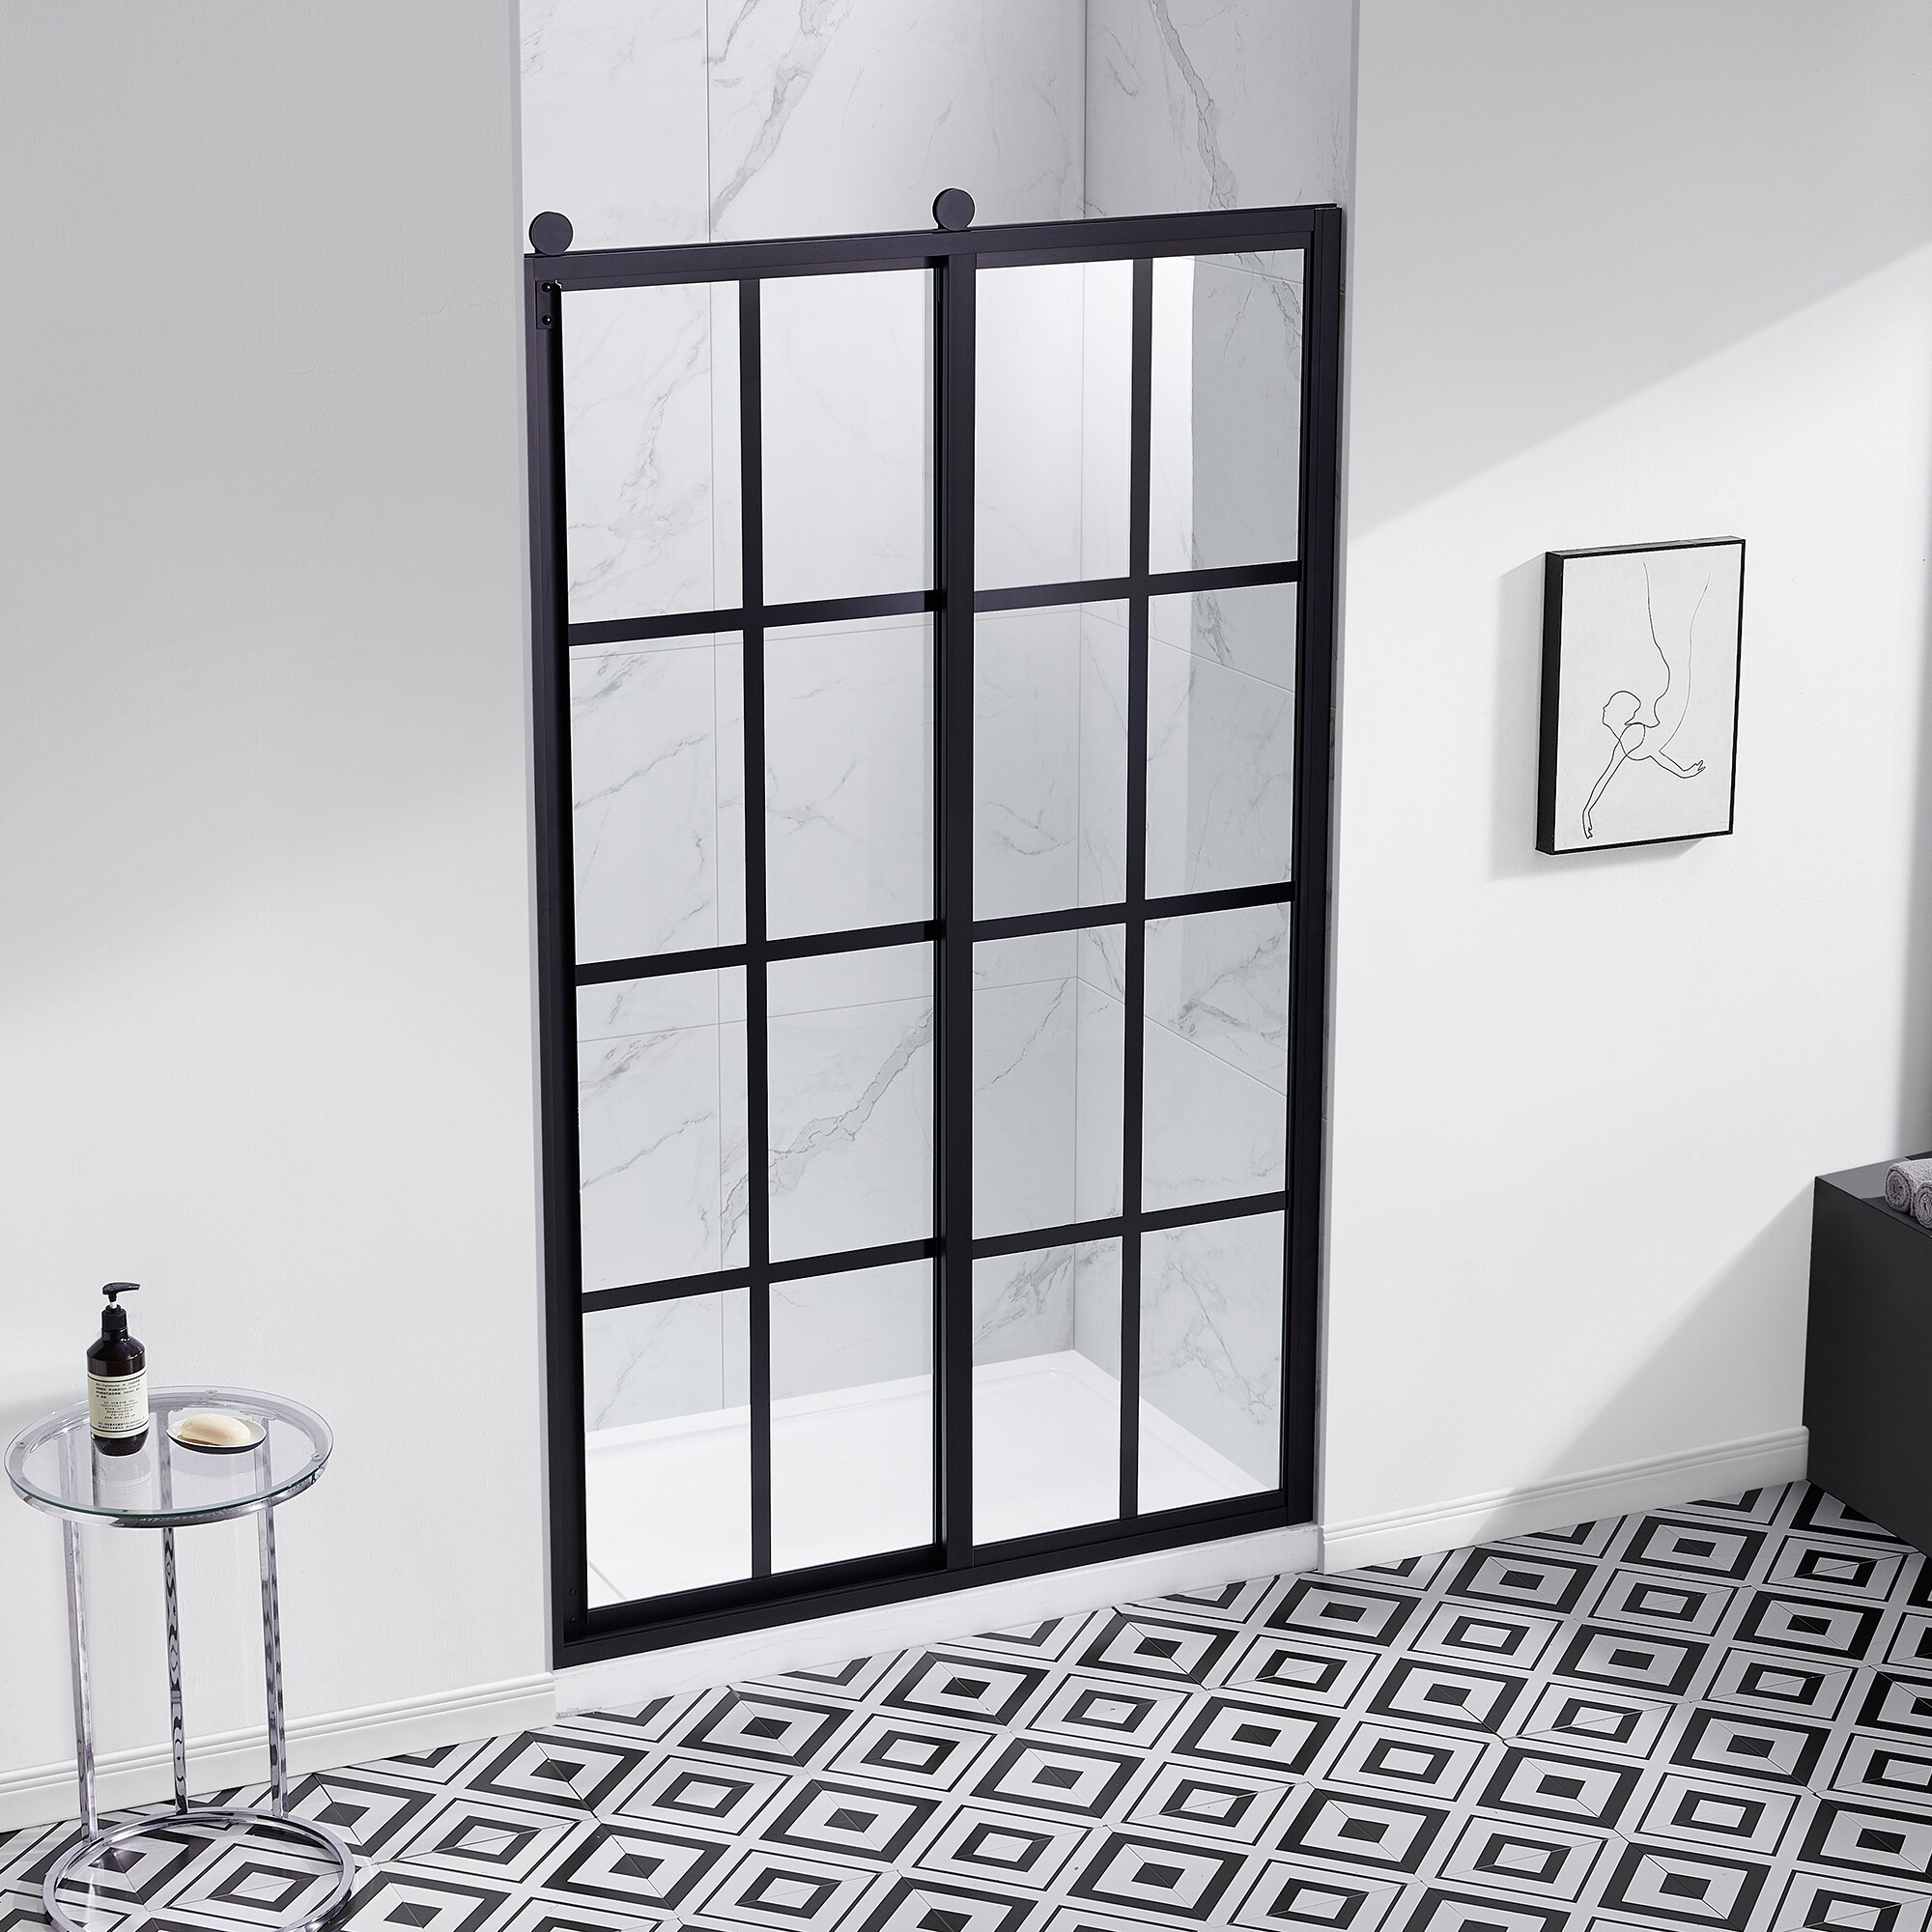 Ove Decors Larissa 48 in. 6 mm Silk Screen Shower Door in Black